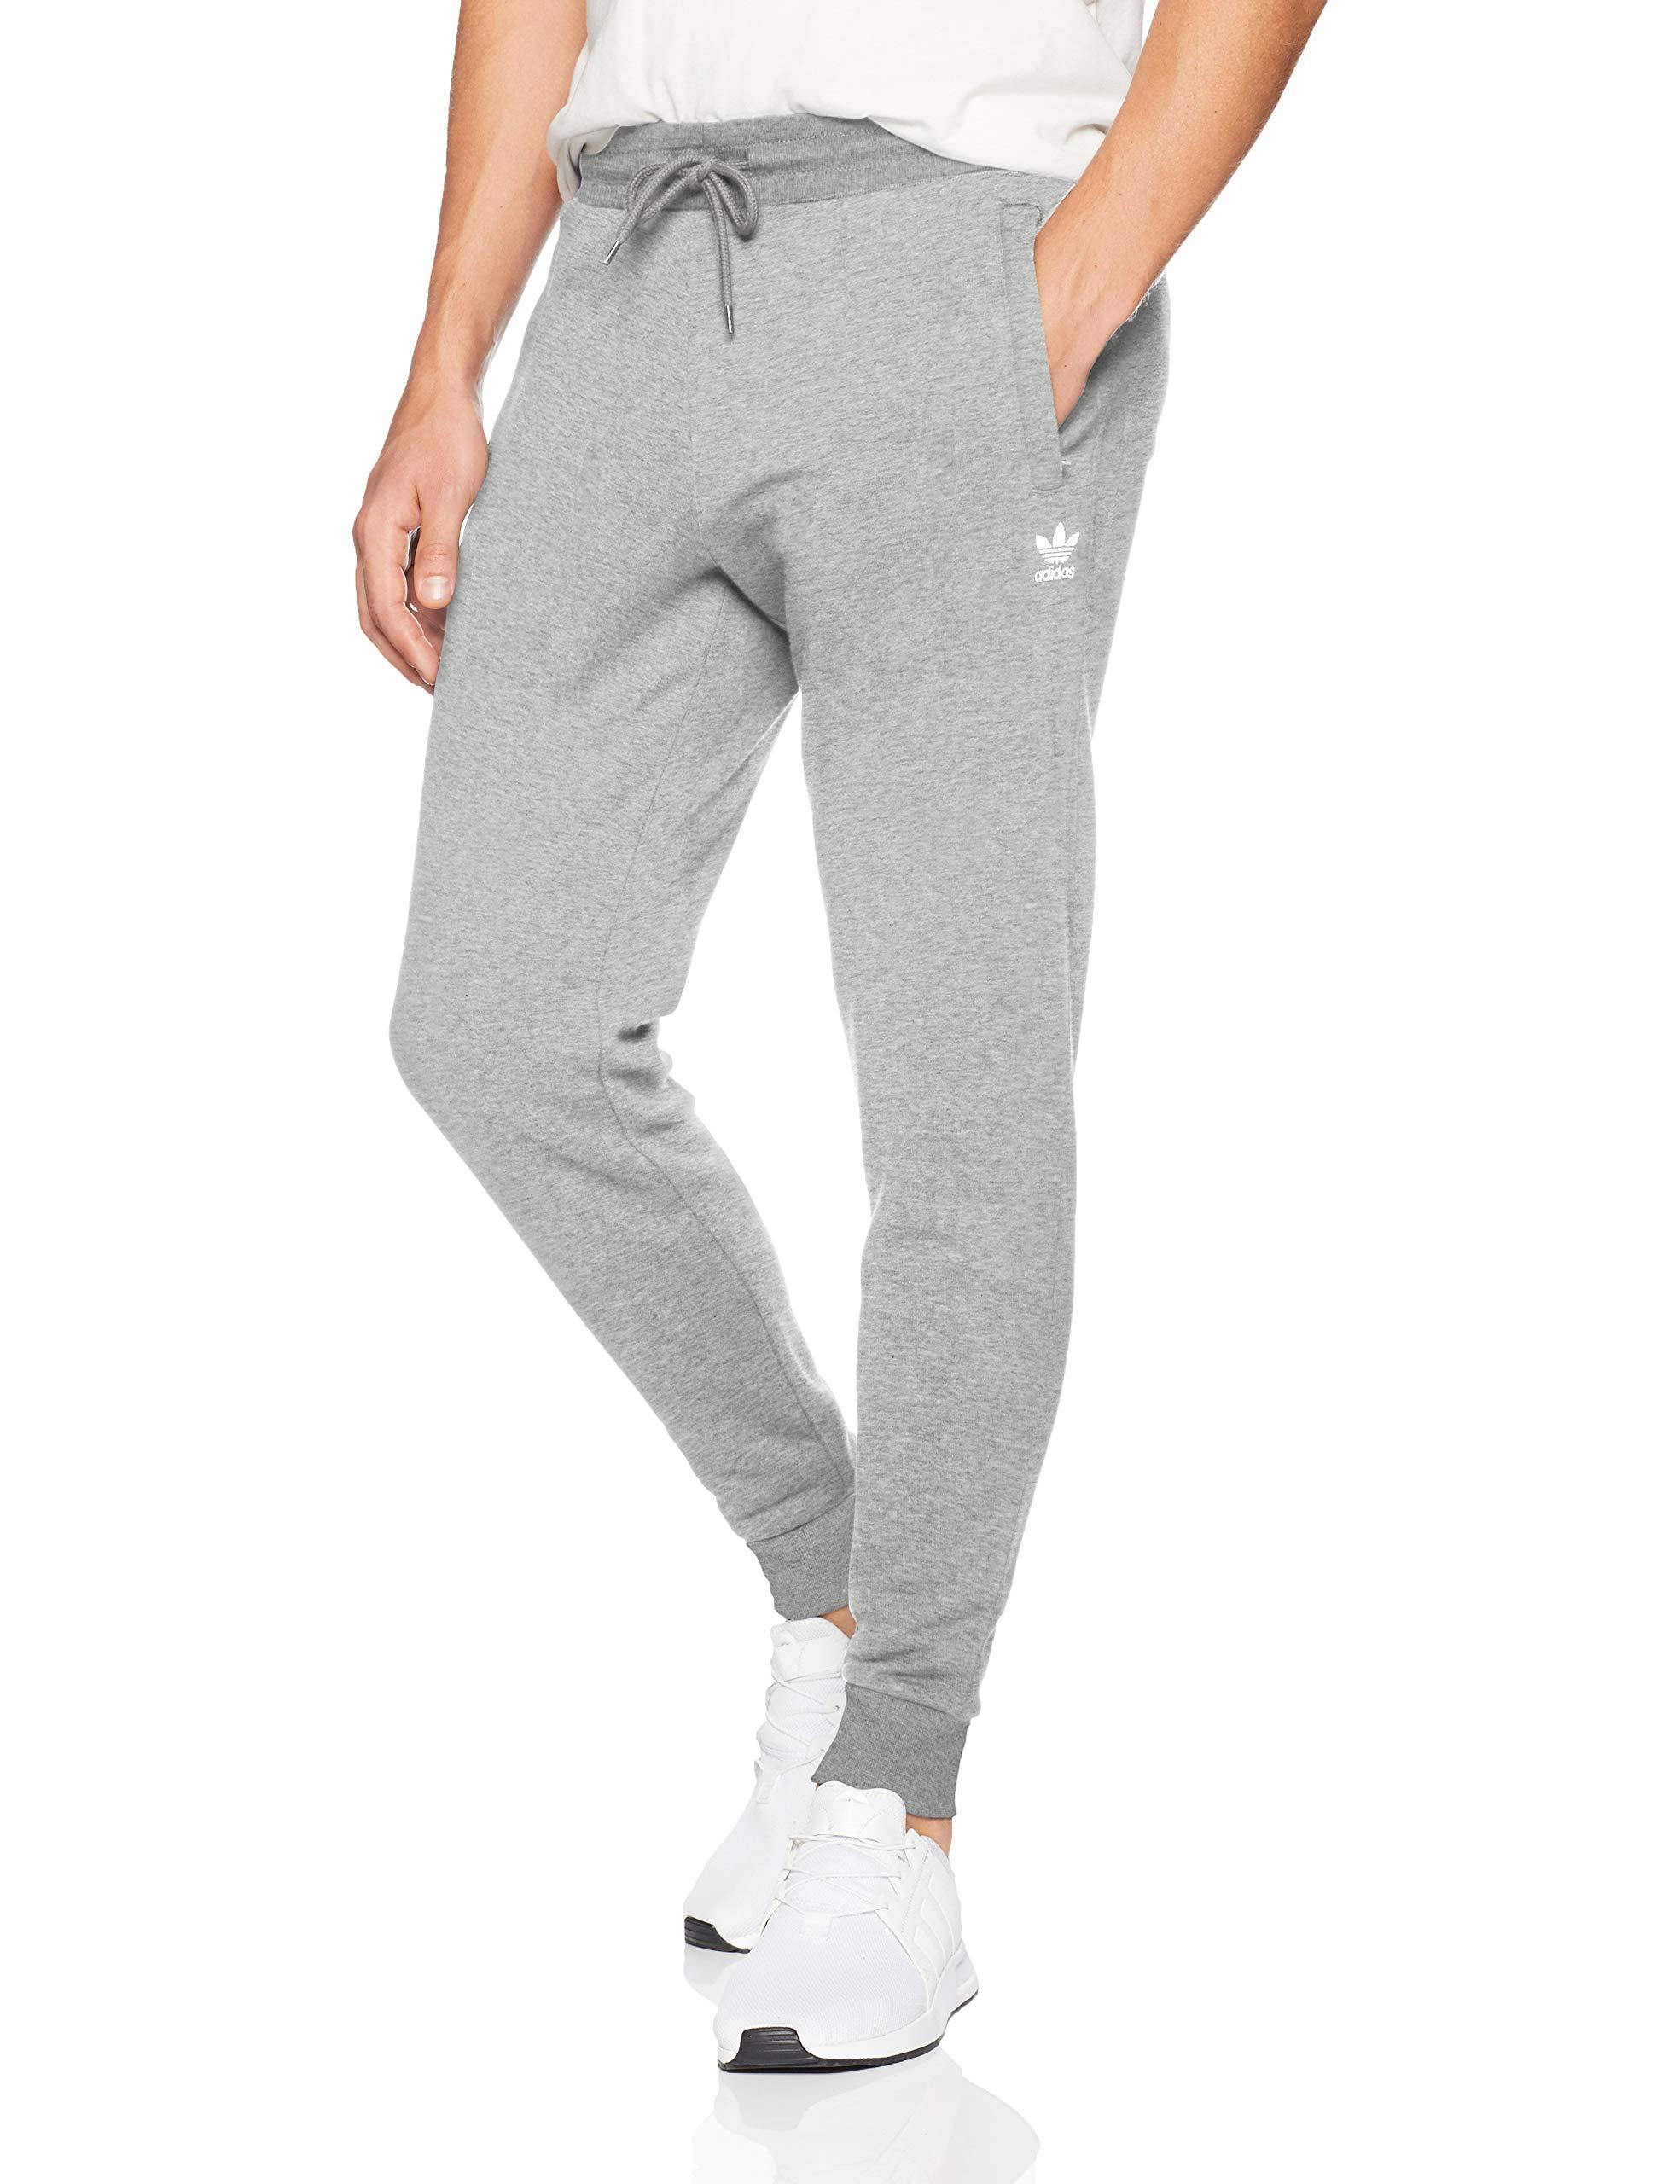 Forvirre Fritagelse Havn adidas Originals Slim-fit Fleece Jogger Pants in Blue for Men - Lyst